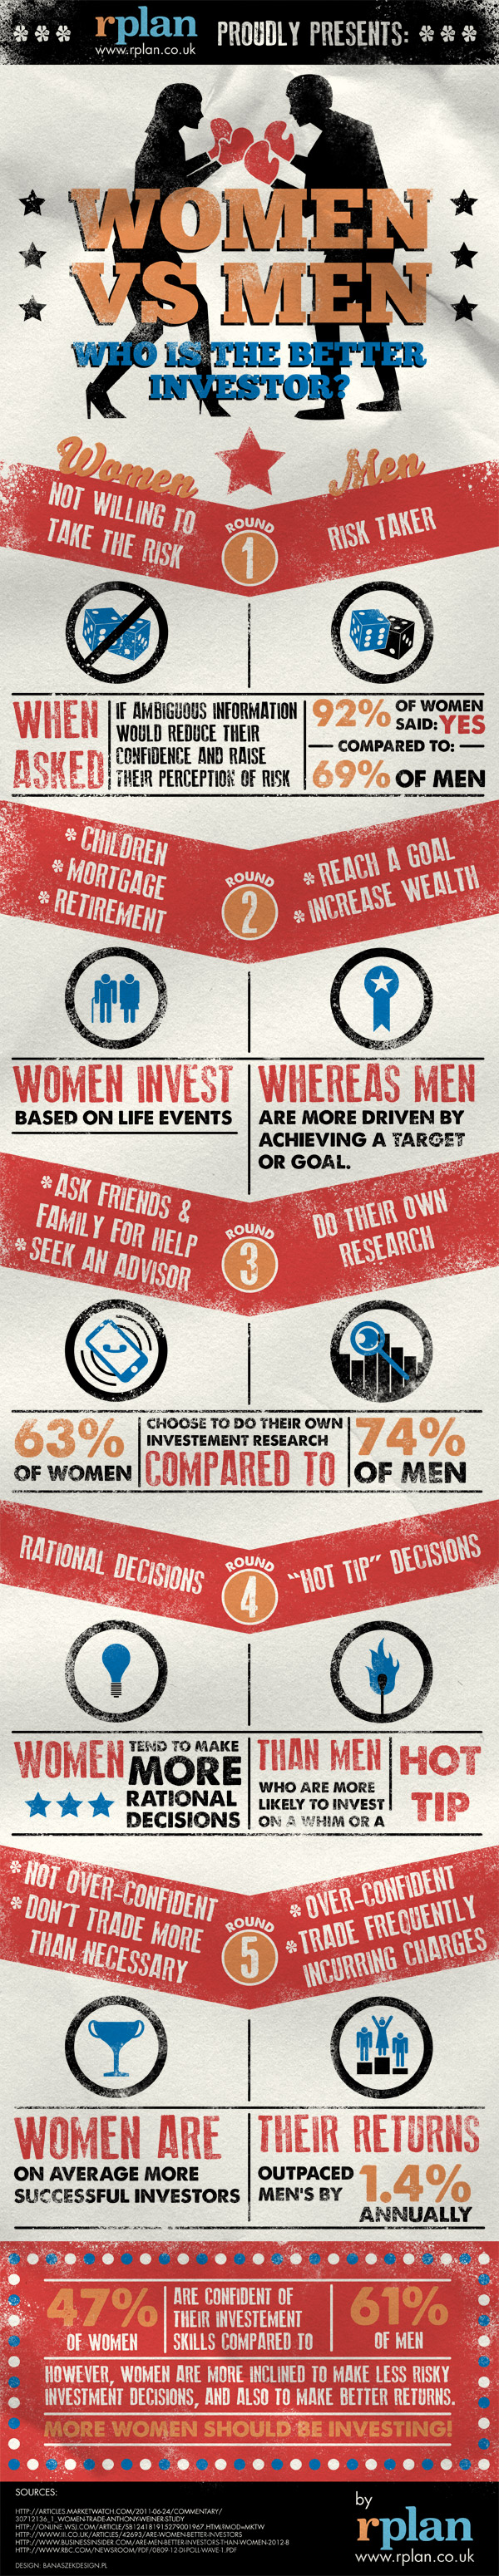 Women vs Men: Who's the Better Investor?